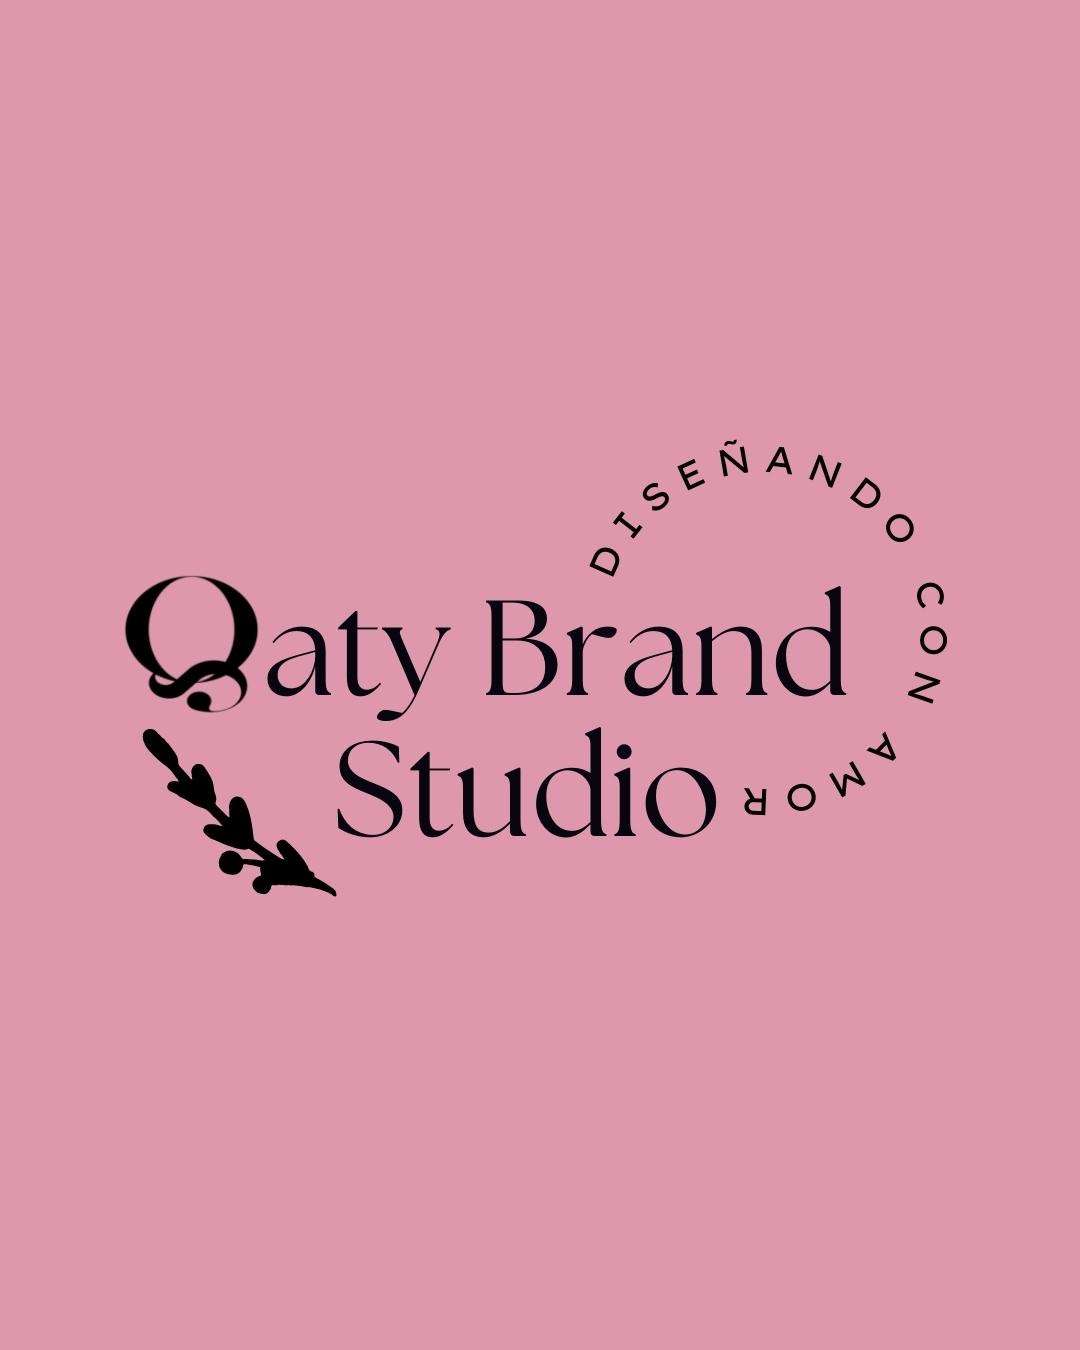 Qatybrand Studio - Santo Domingo Este - Diseño gráfico